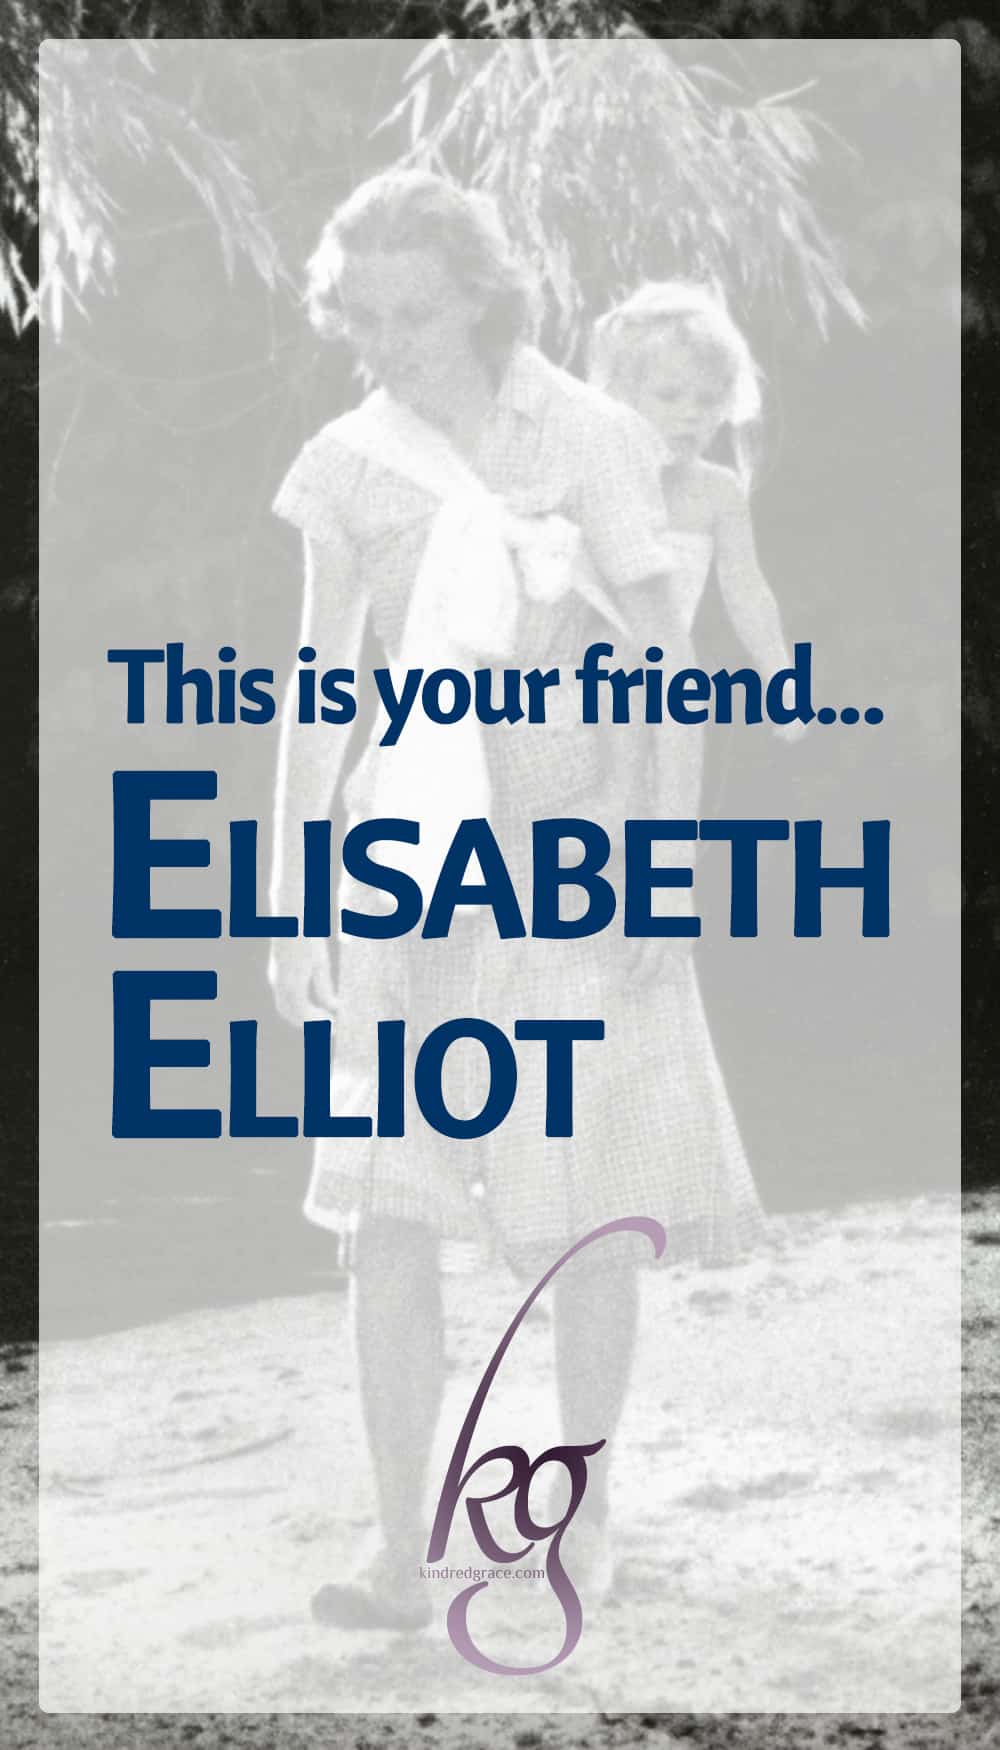 This is your friend Elisabeth Elliot… via @KindredGrace